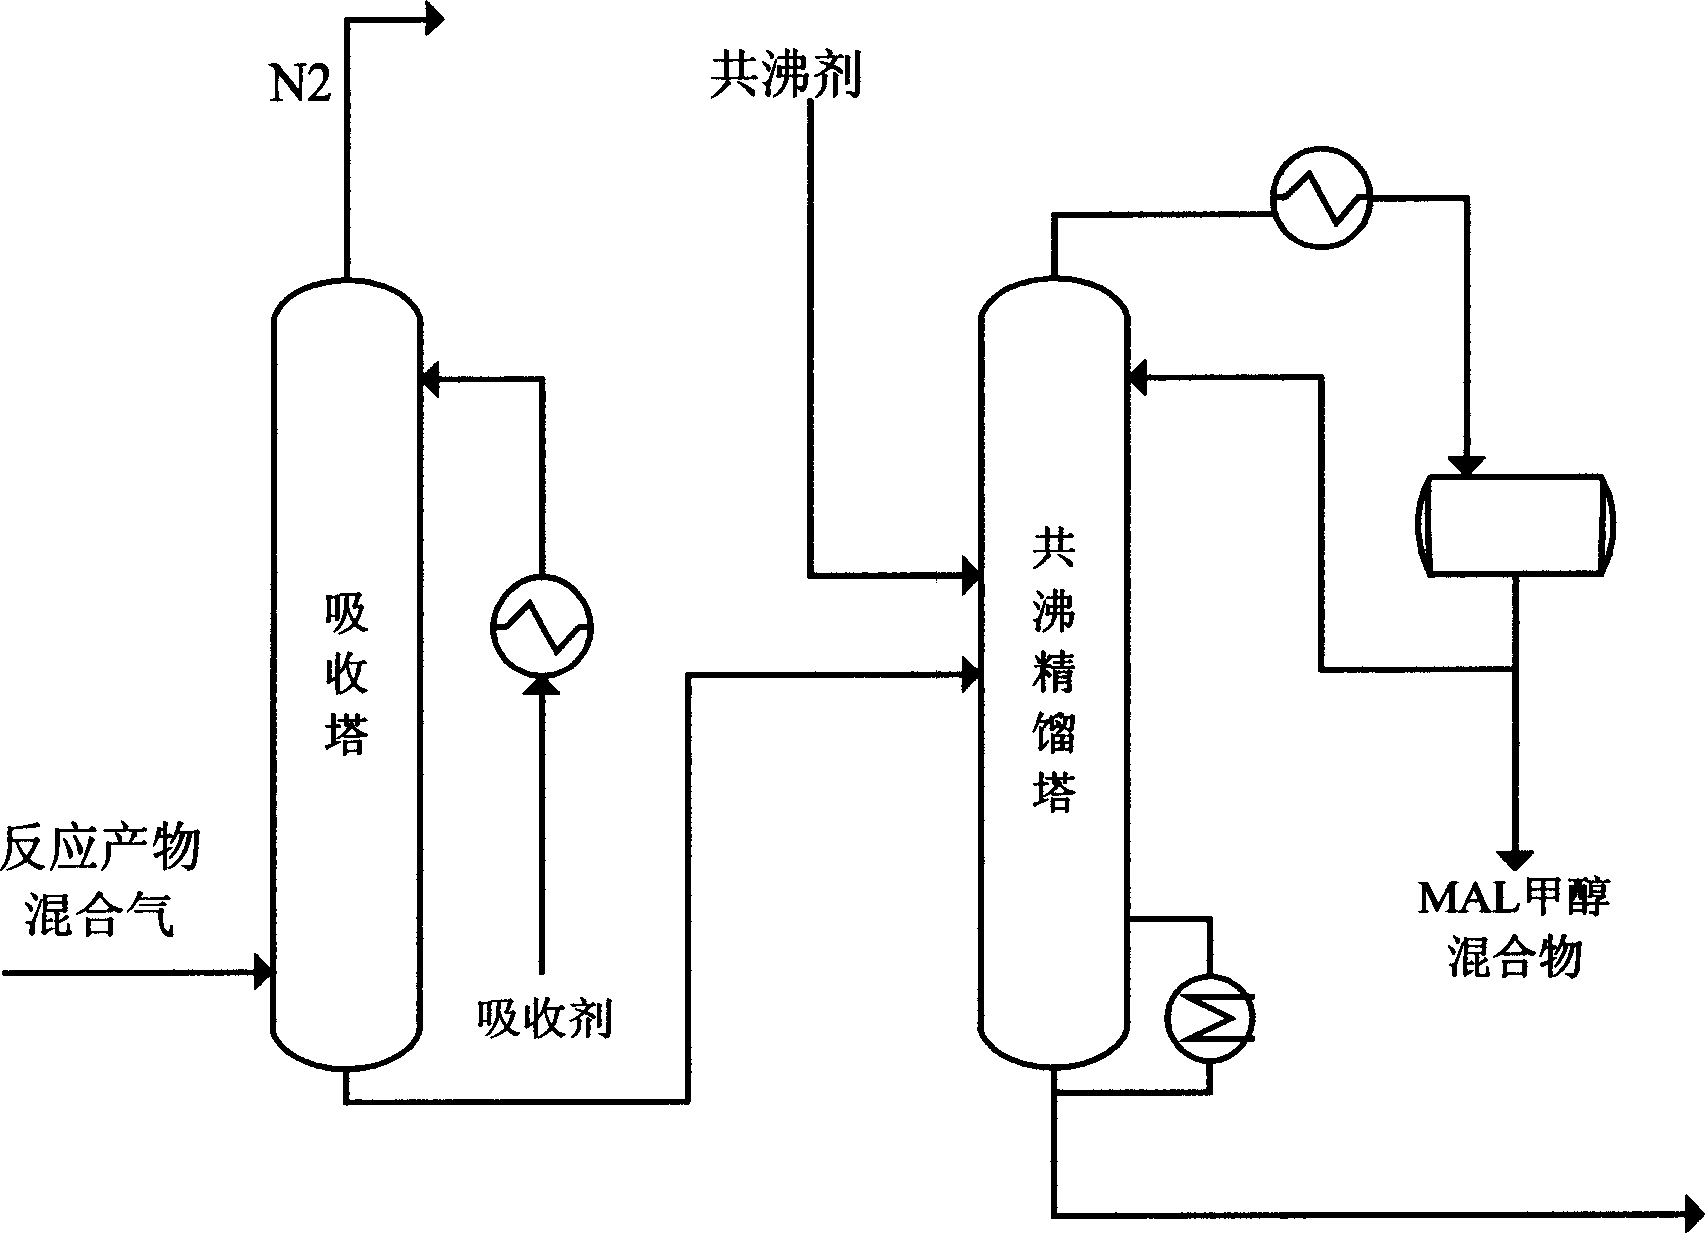 Method for separating methyl-acrolein in methyl-methyl acrylate